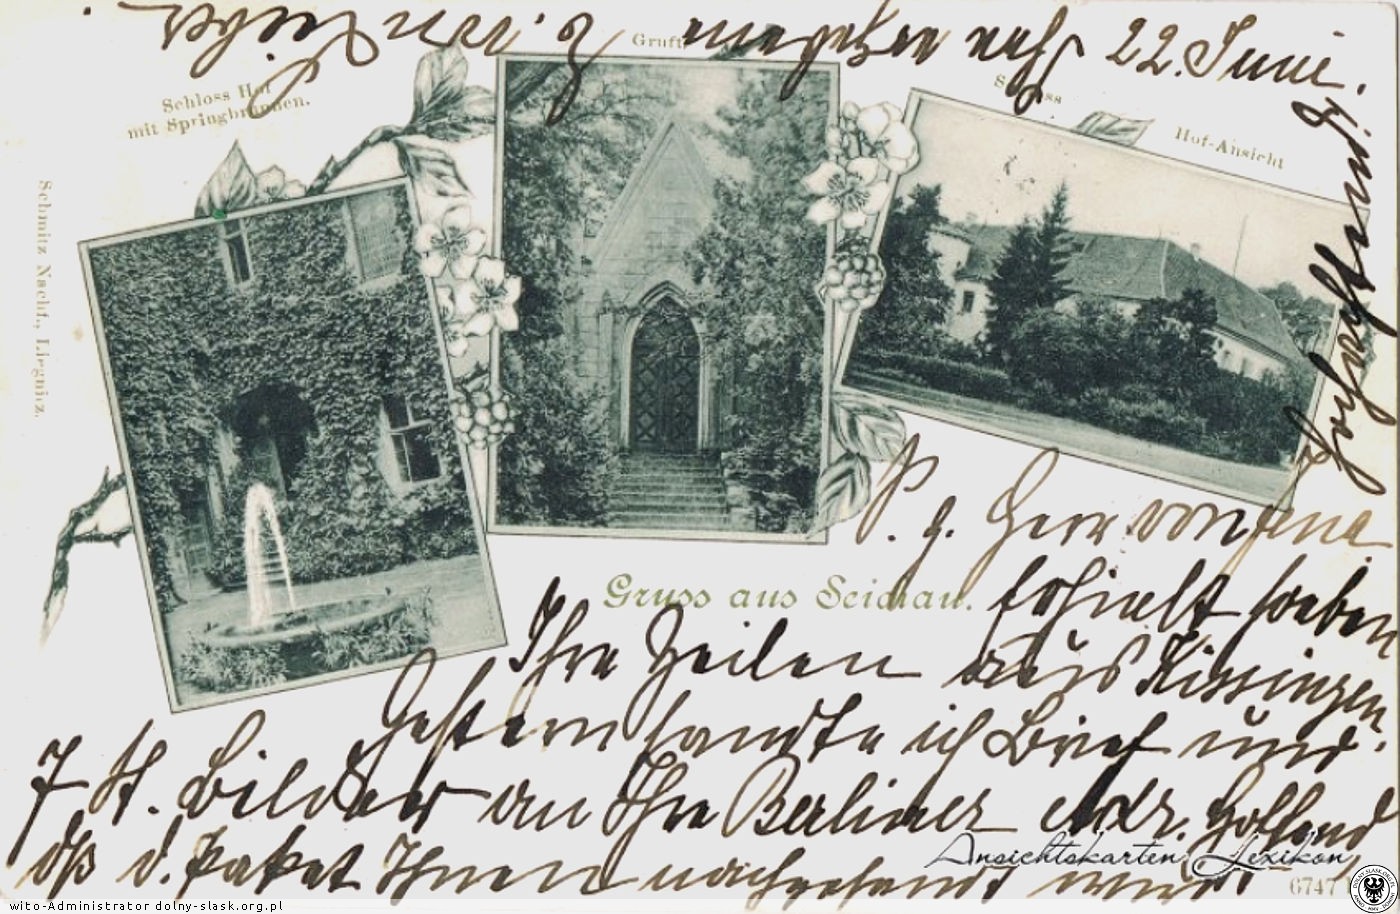 Polska org.pl: Sichów na pocztówce – 1905 rok. Środkowe zdjęcie pokazuje mauzoleum w parku pałacowym.